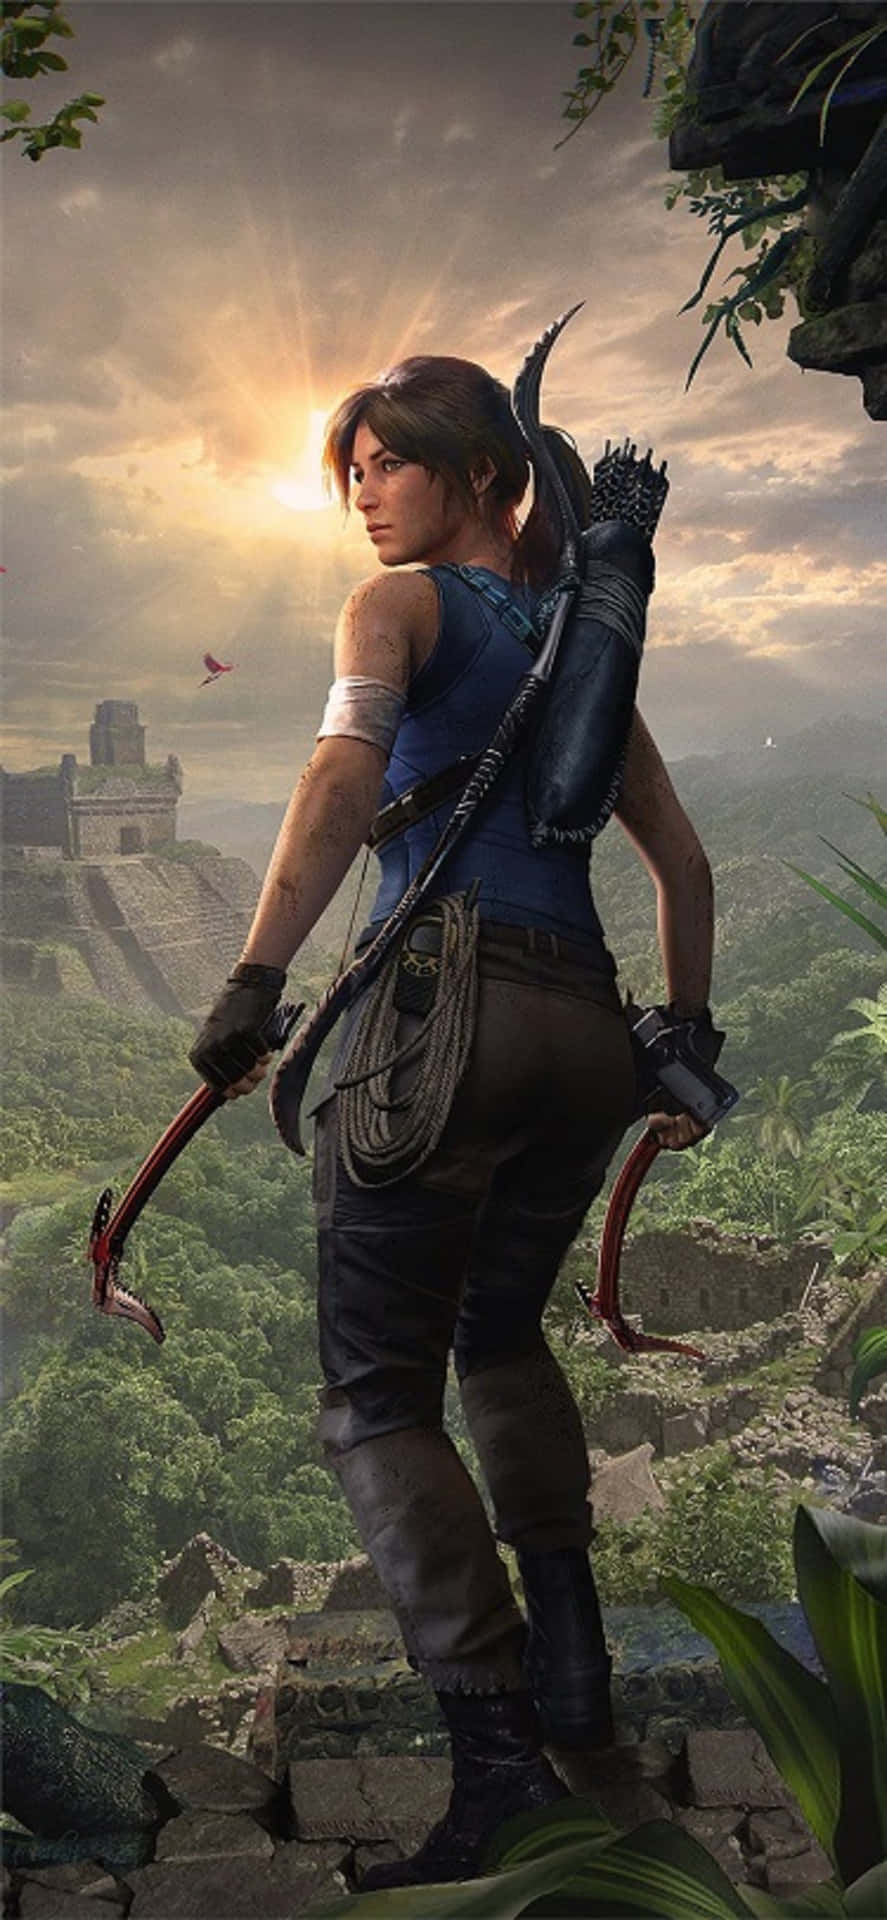 Asdeslumbrantes Imagens De Shadow Of The Tomb Raider Em Um Iphone X.